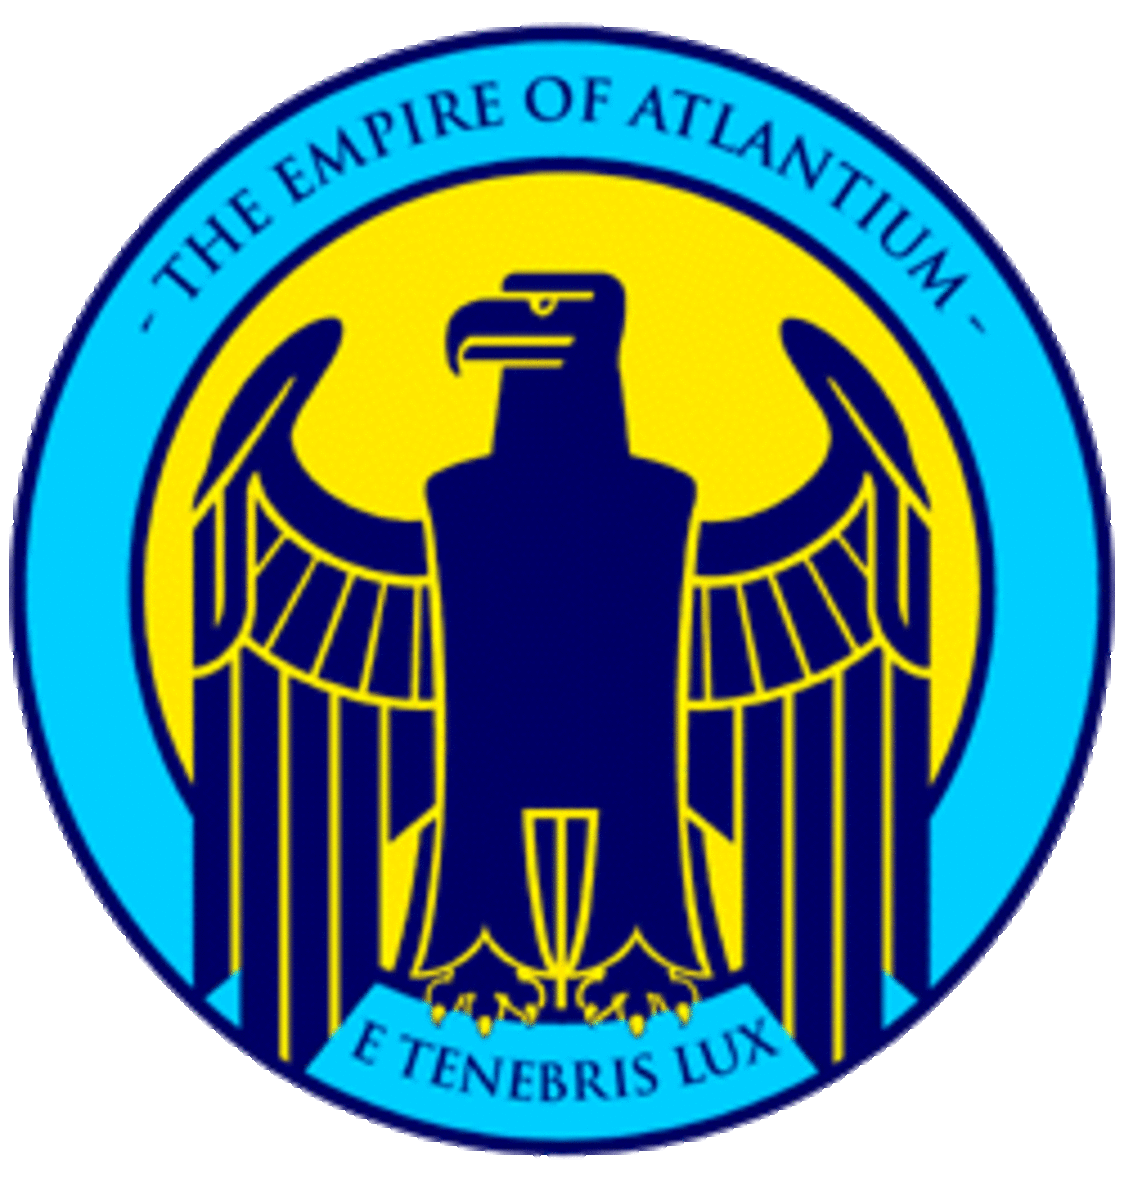 Empire of Atlantium